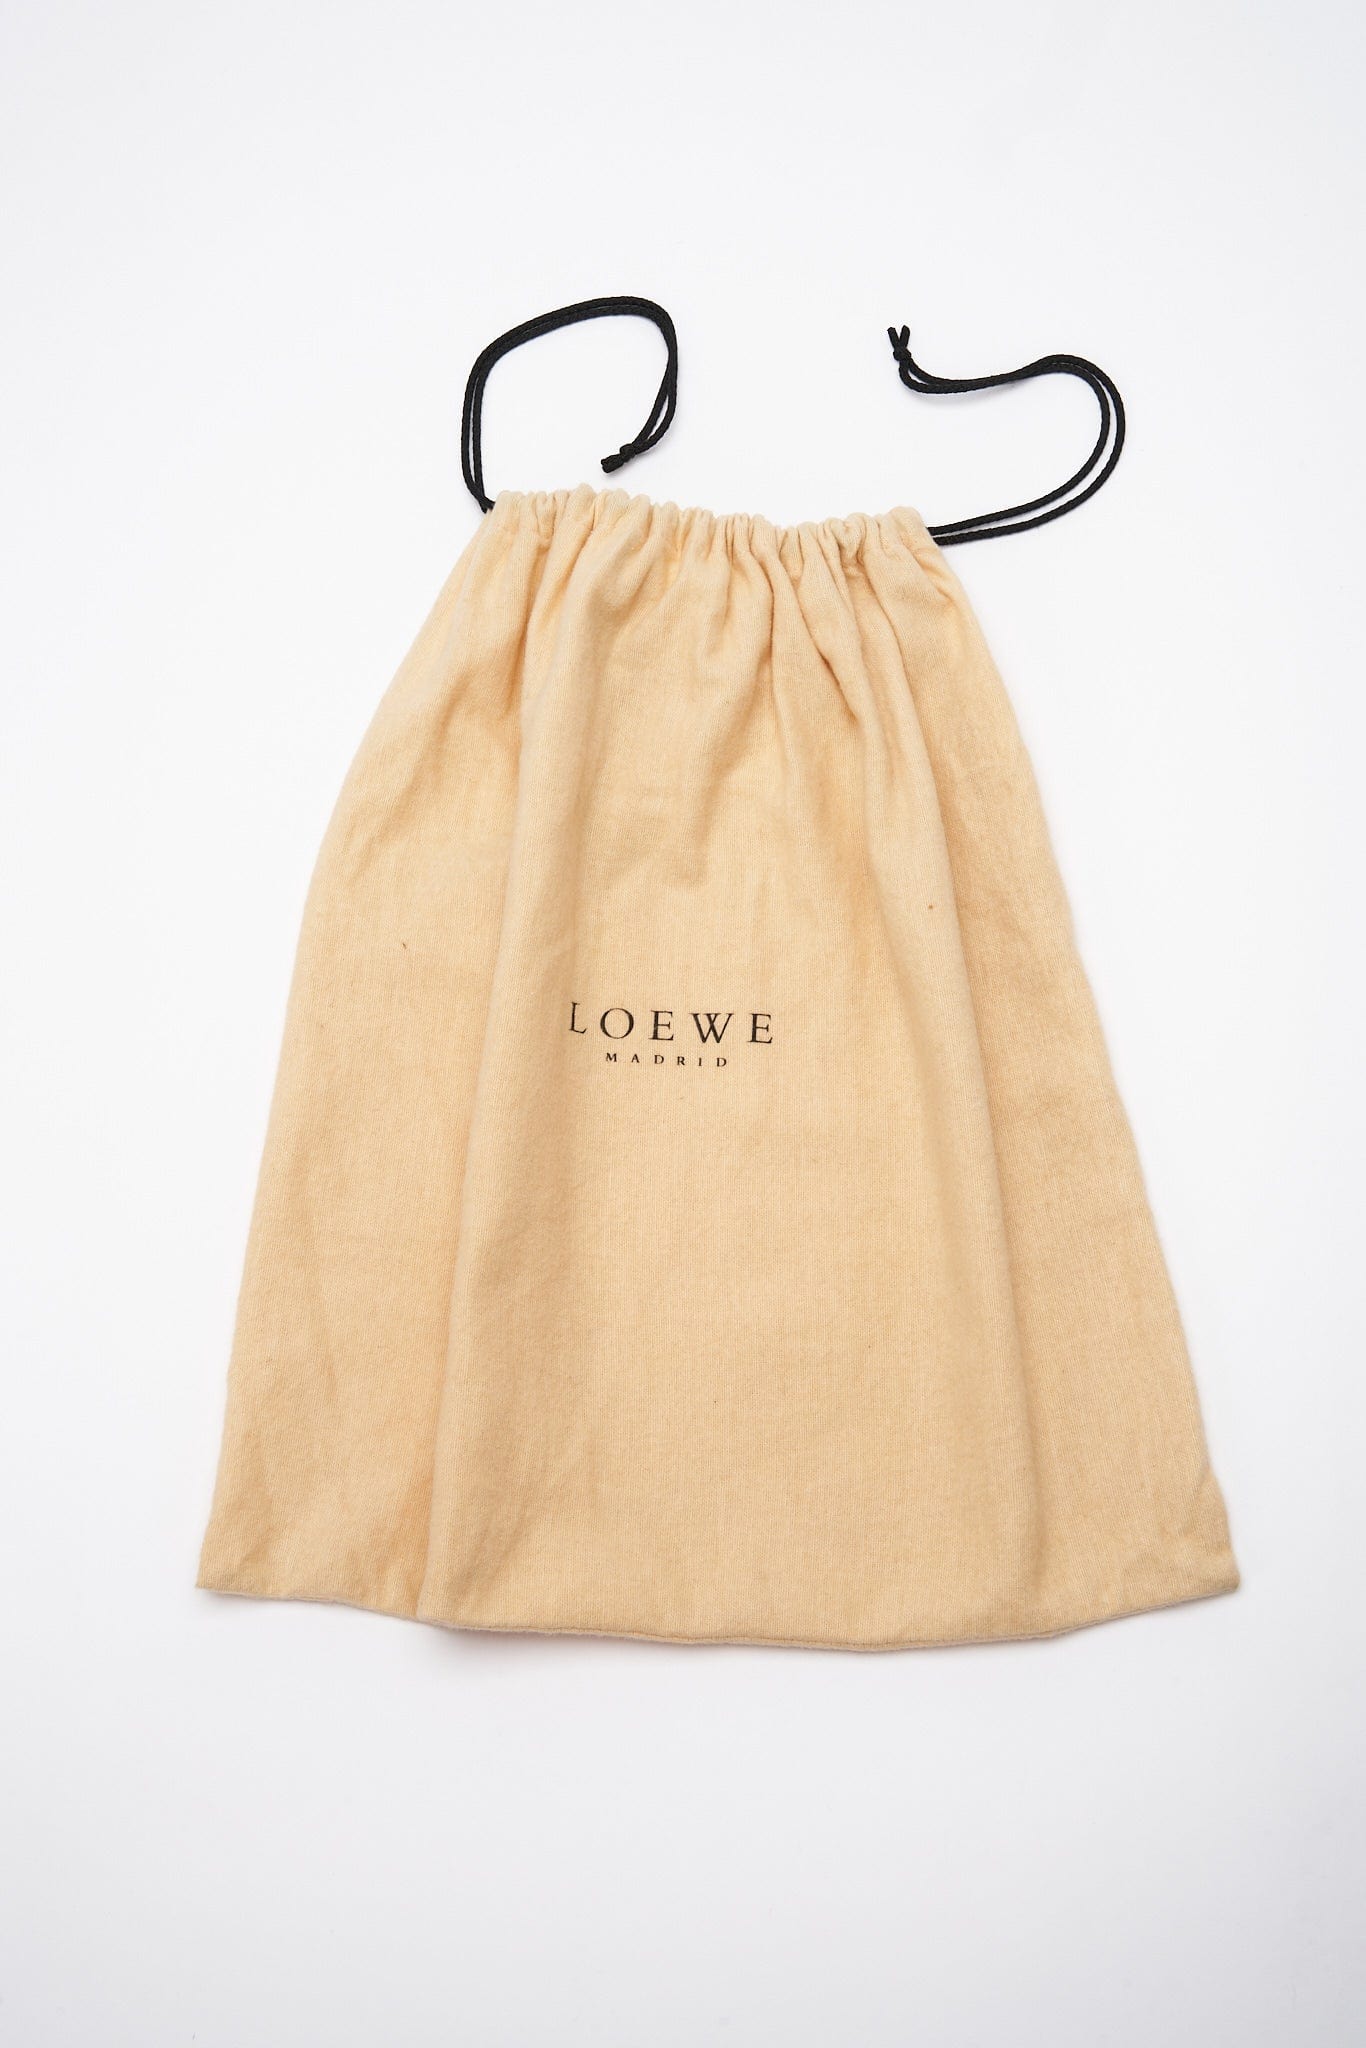 Vintage Loewe Knot Bag